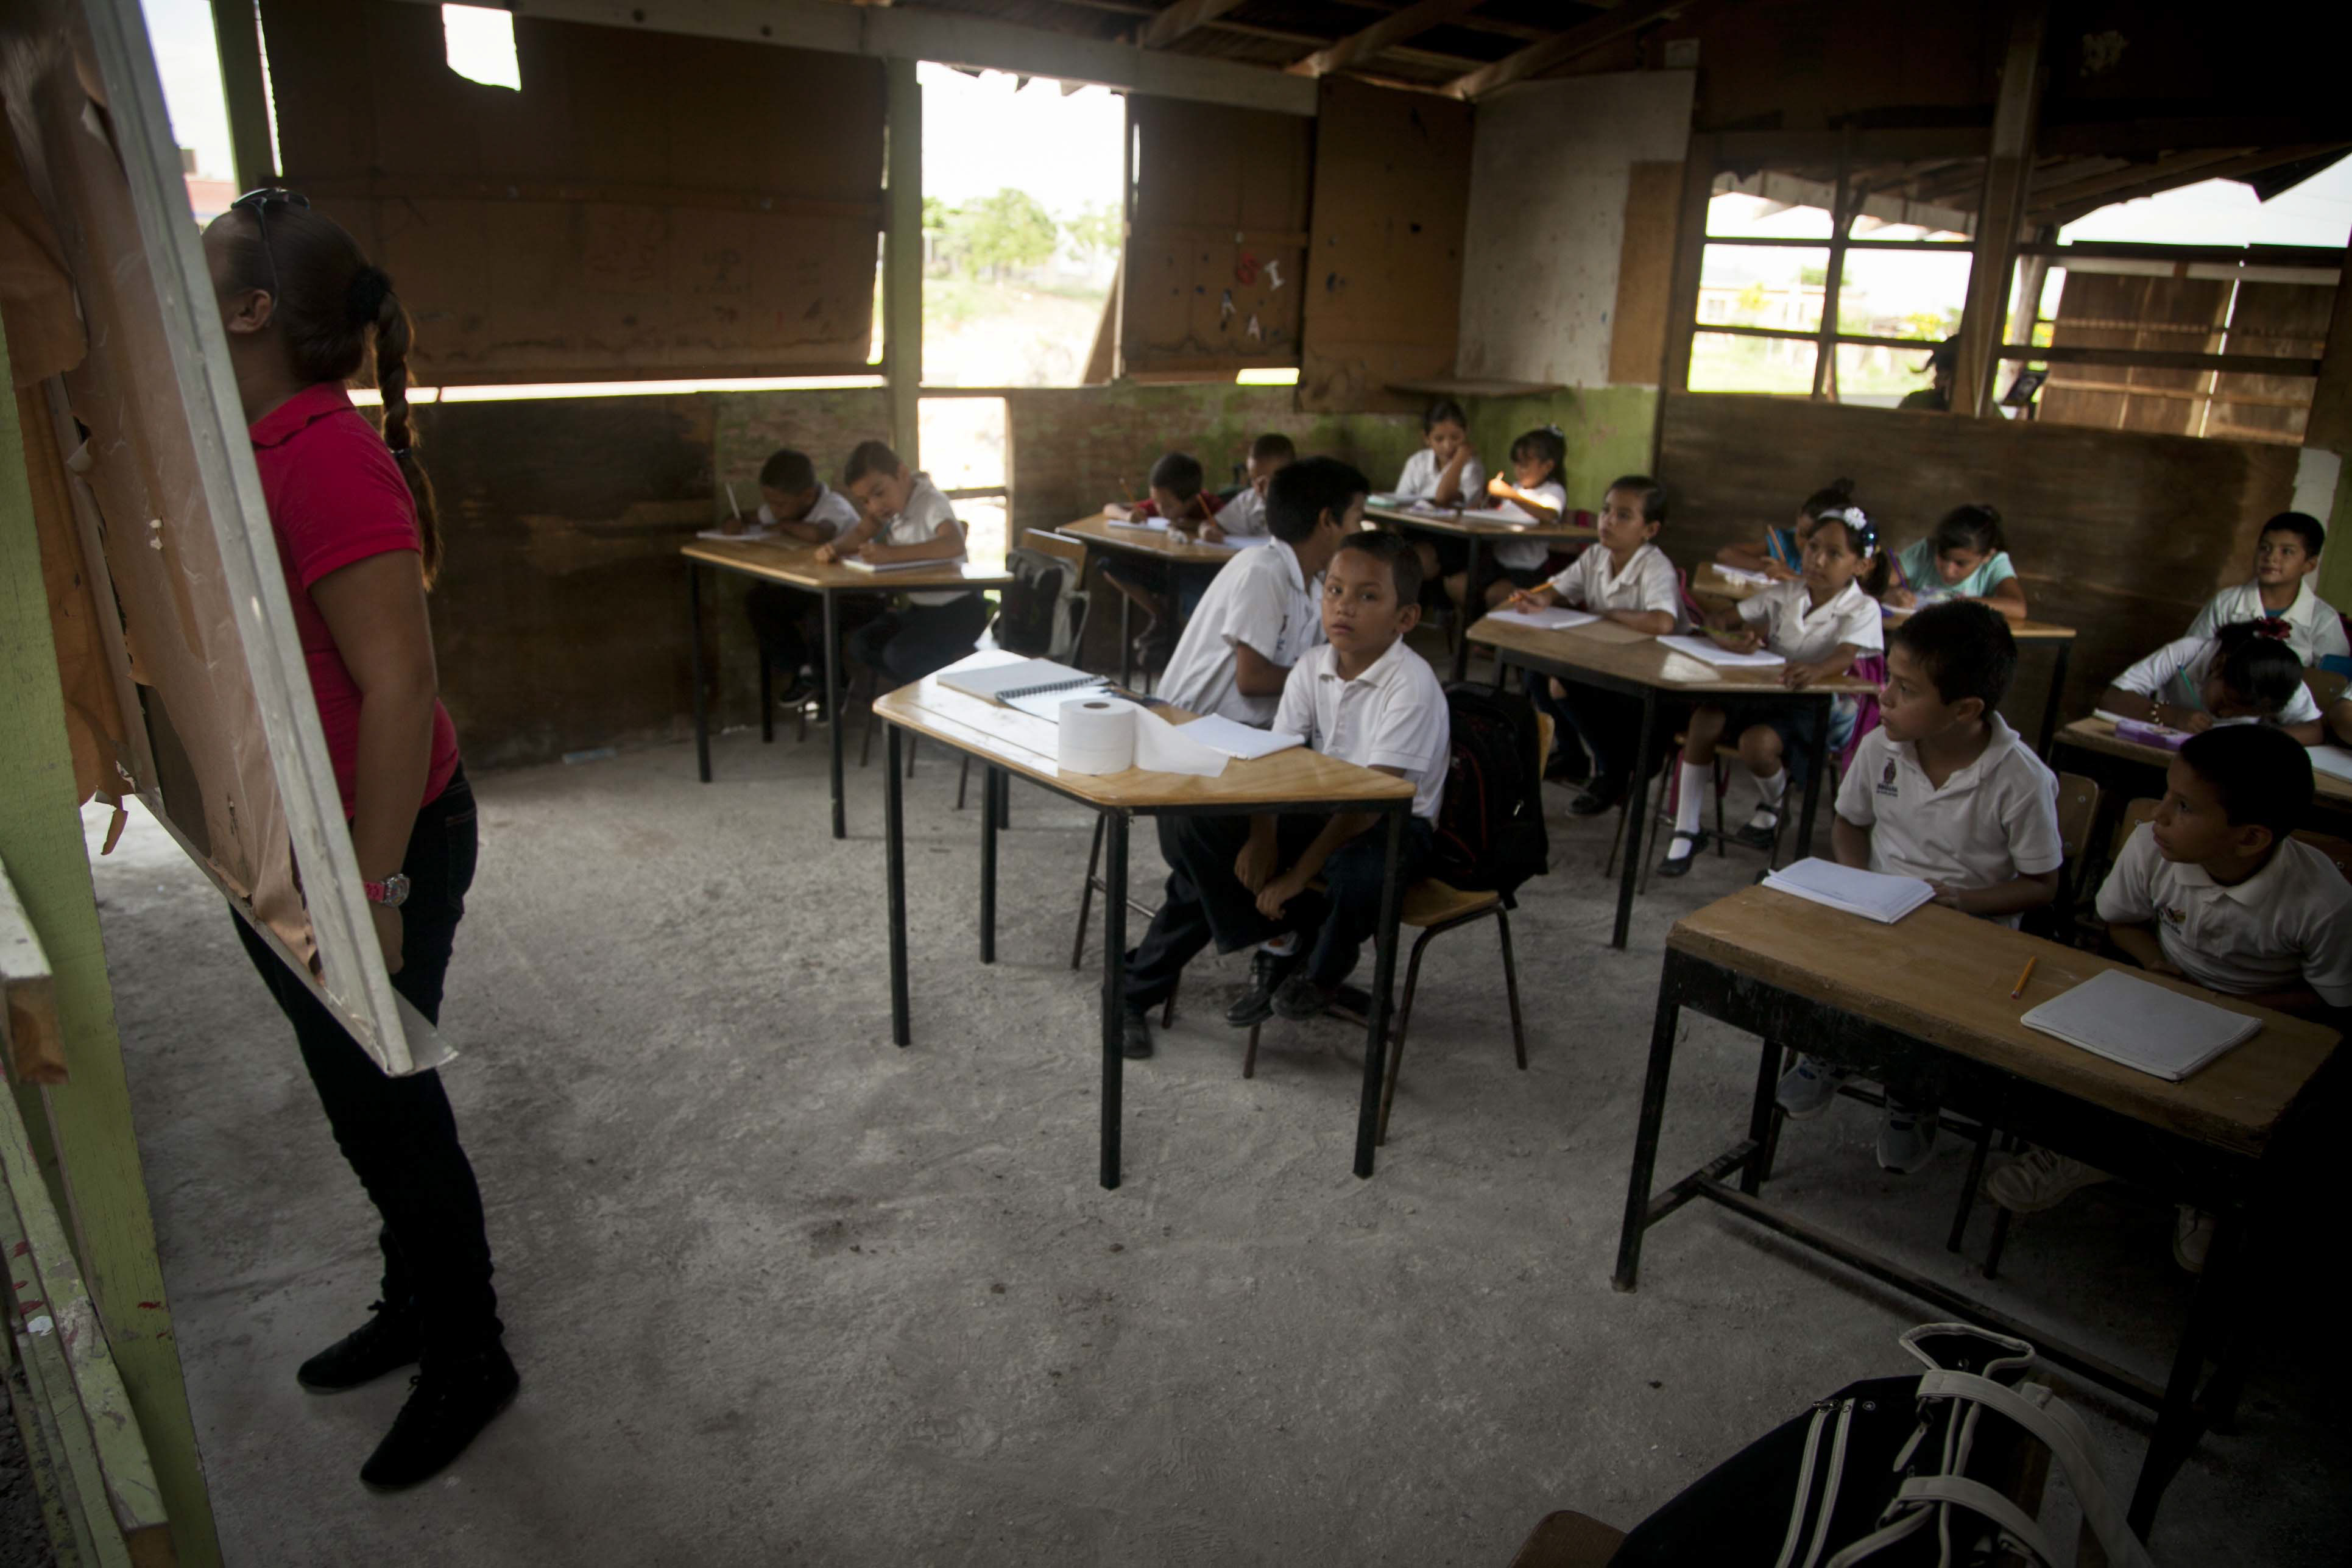 Maestros en Barranquilla piden terminar la jornada escolar a las 11: “Con ese calor del medio día nadie aprende y naide enseña”